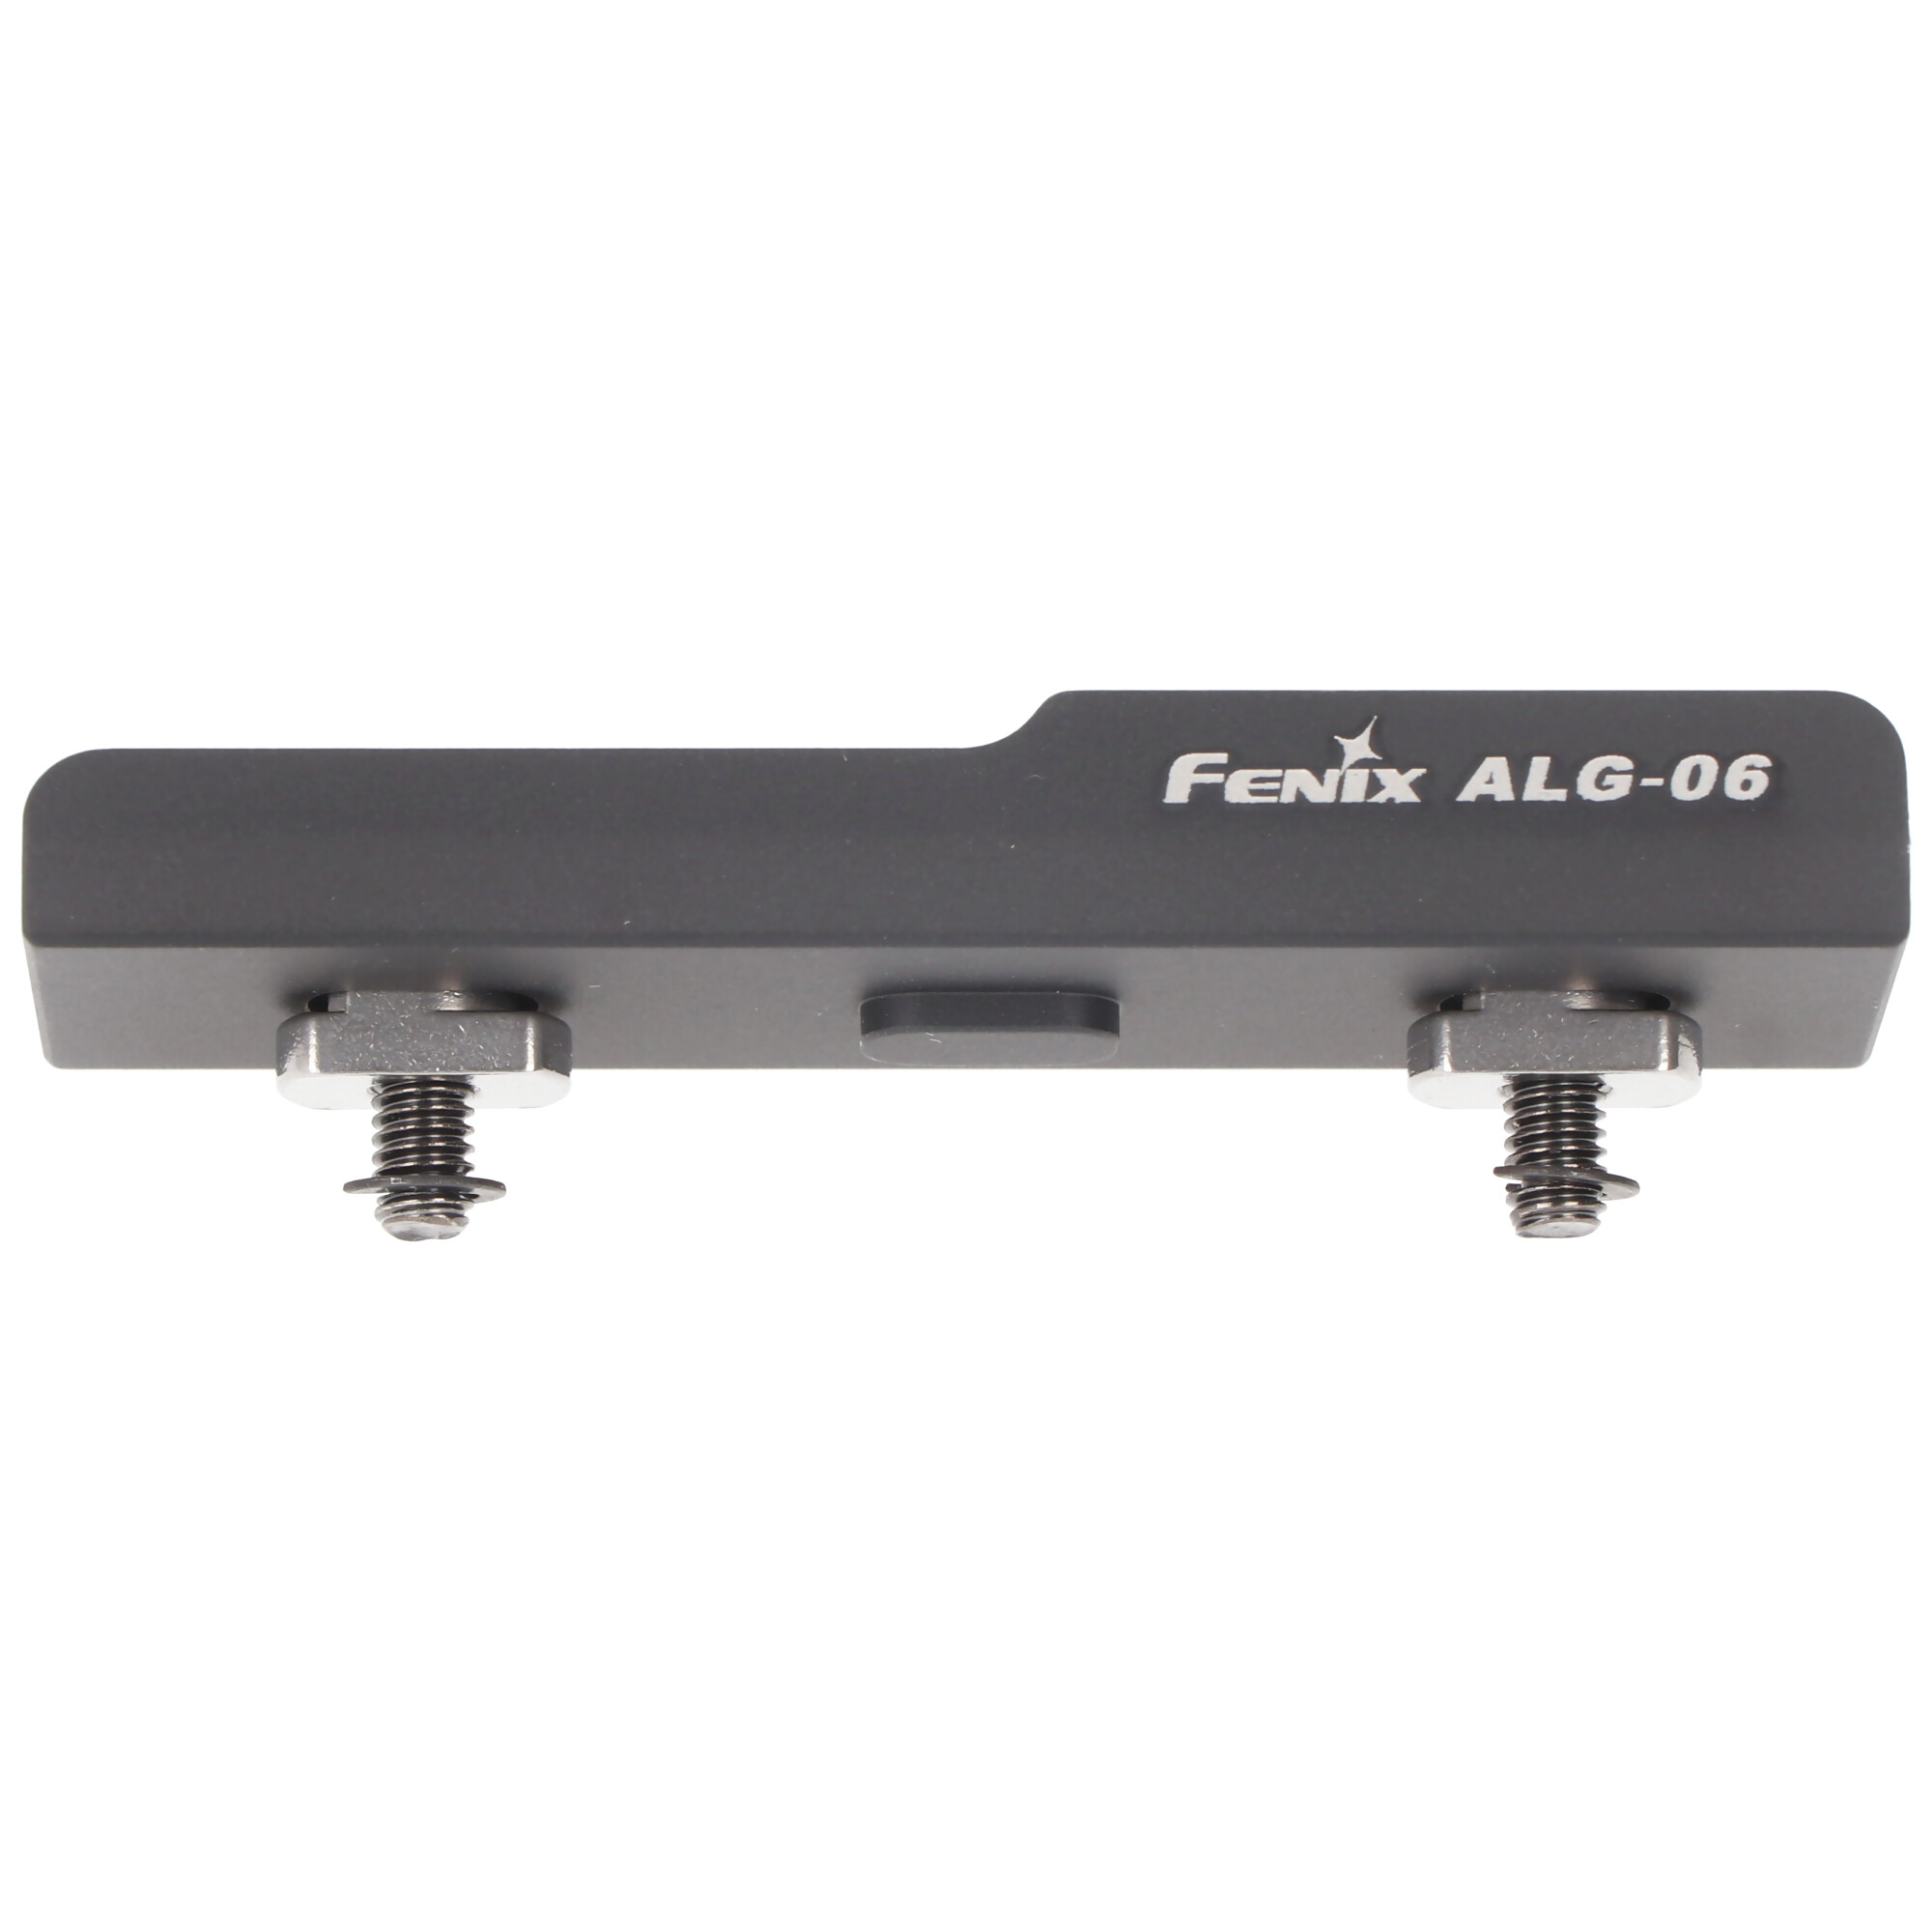 Adapter Fenix  Kabelschalter ALG-06 nur für AER-02 V2.0, AER-03 V2.0, AER-04 , AER-05